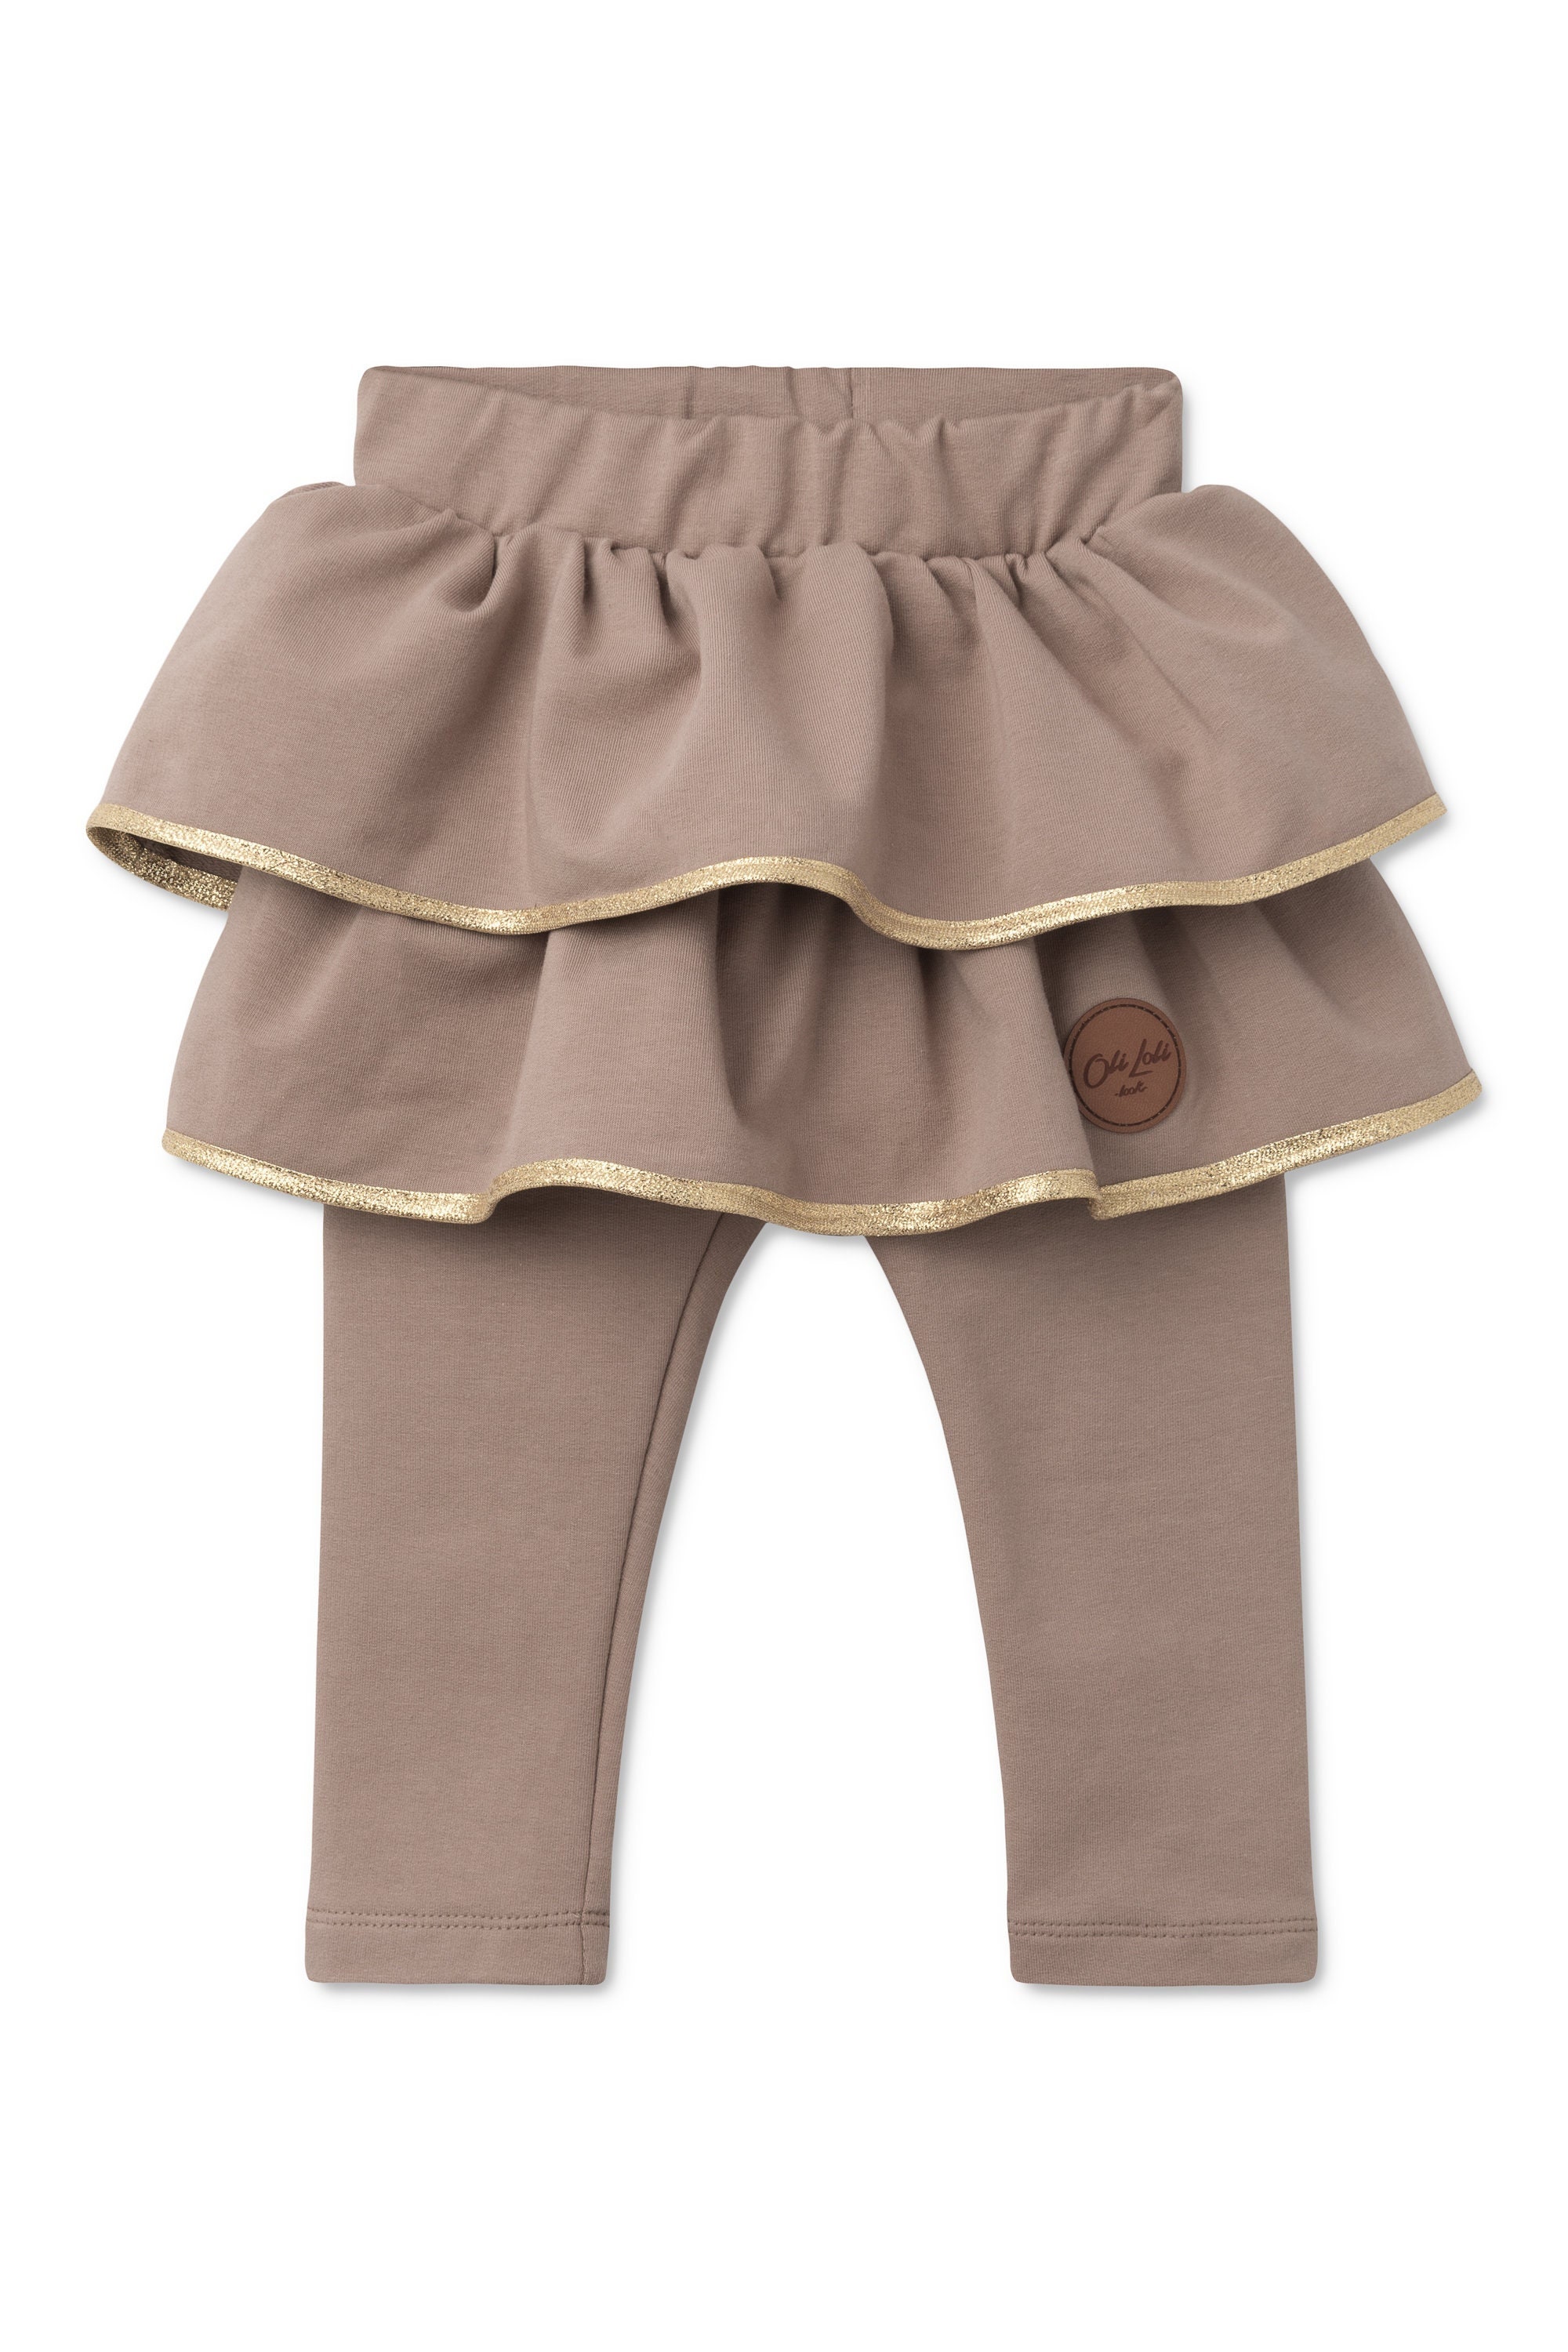 Girls' Pants Spring Autumn Lace Vintage Simple Solid Color Leggings  Children's Pants - AliExpress